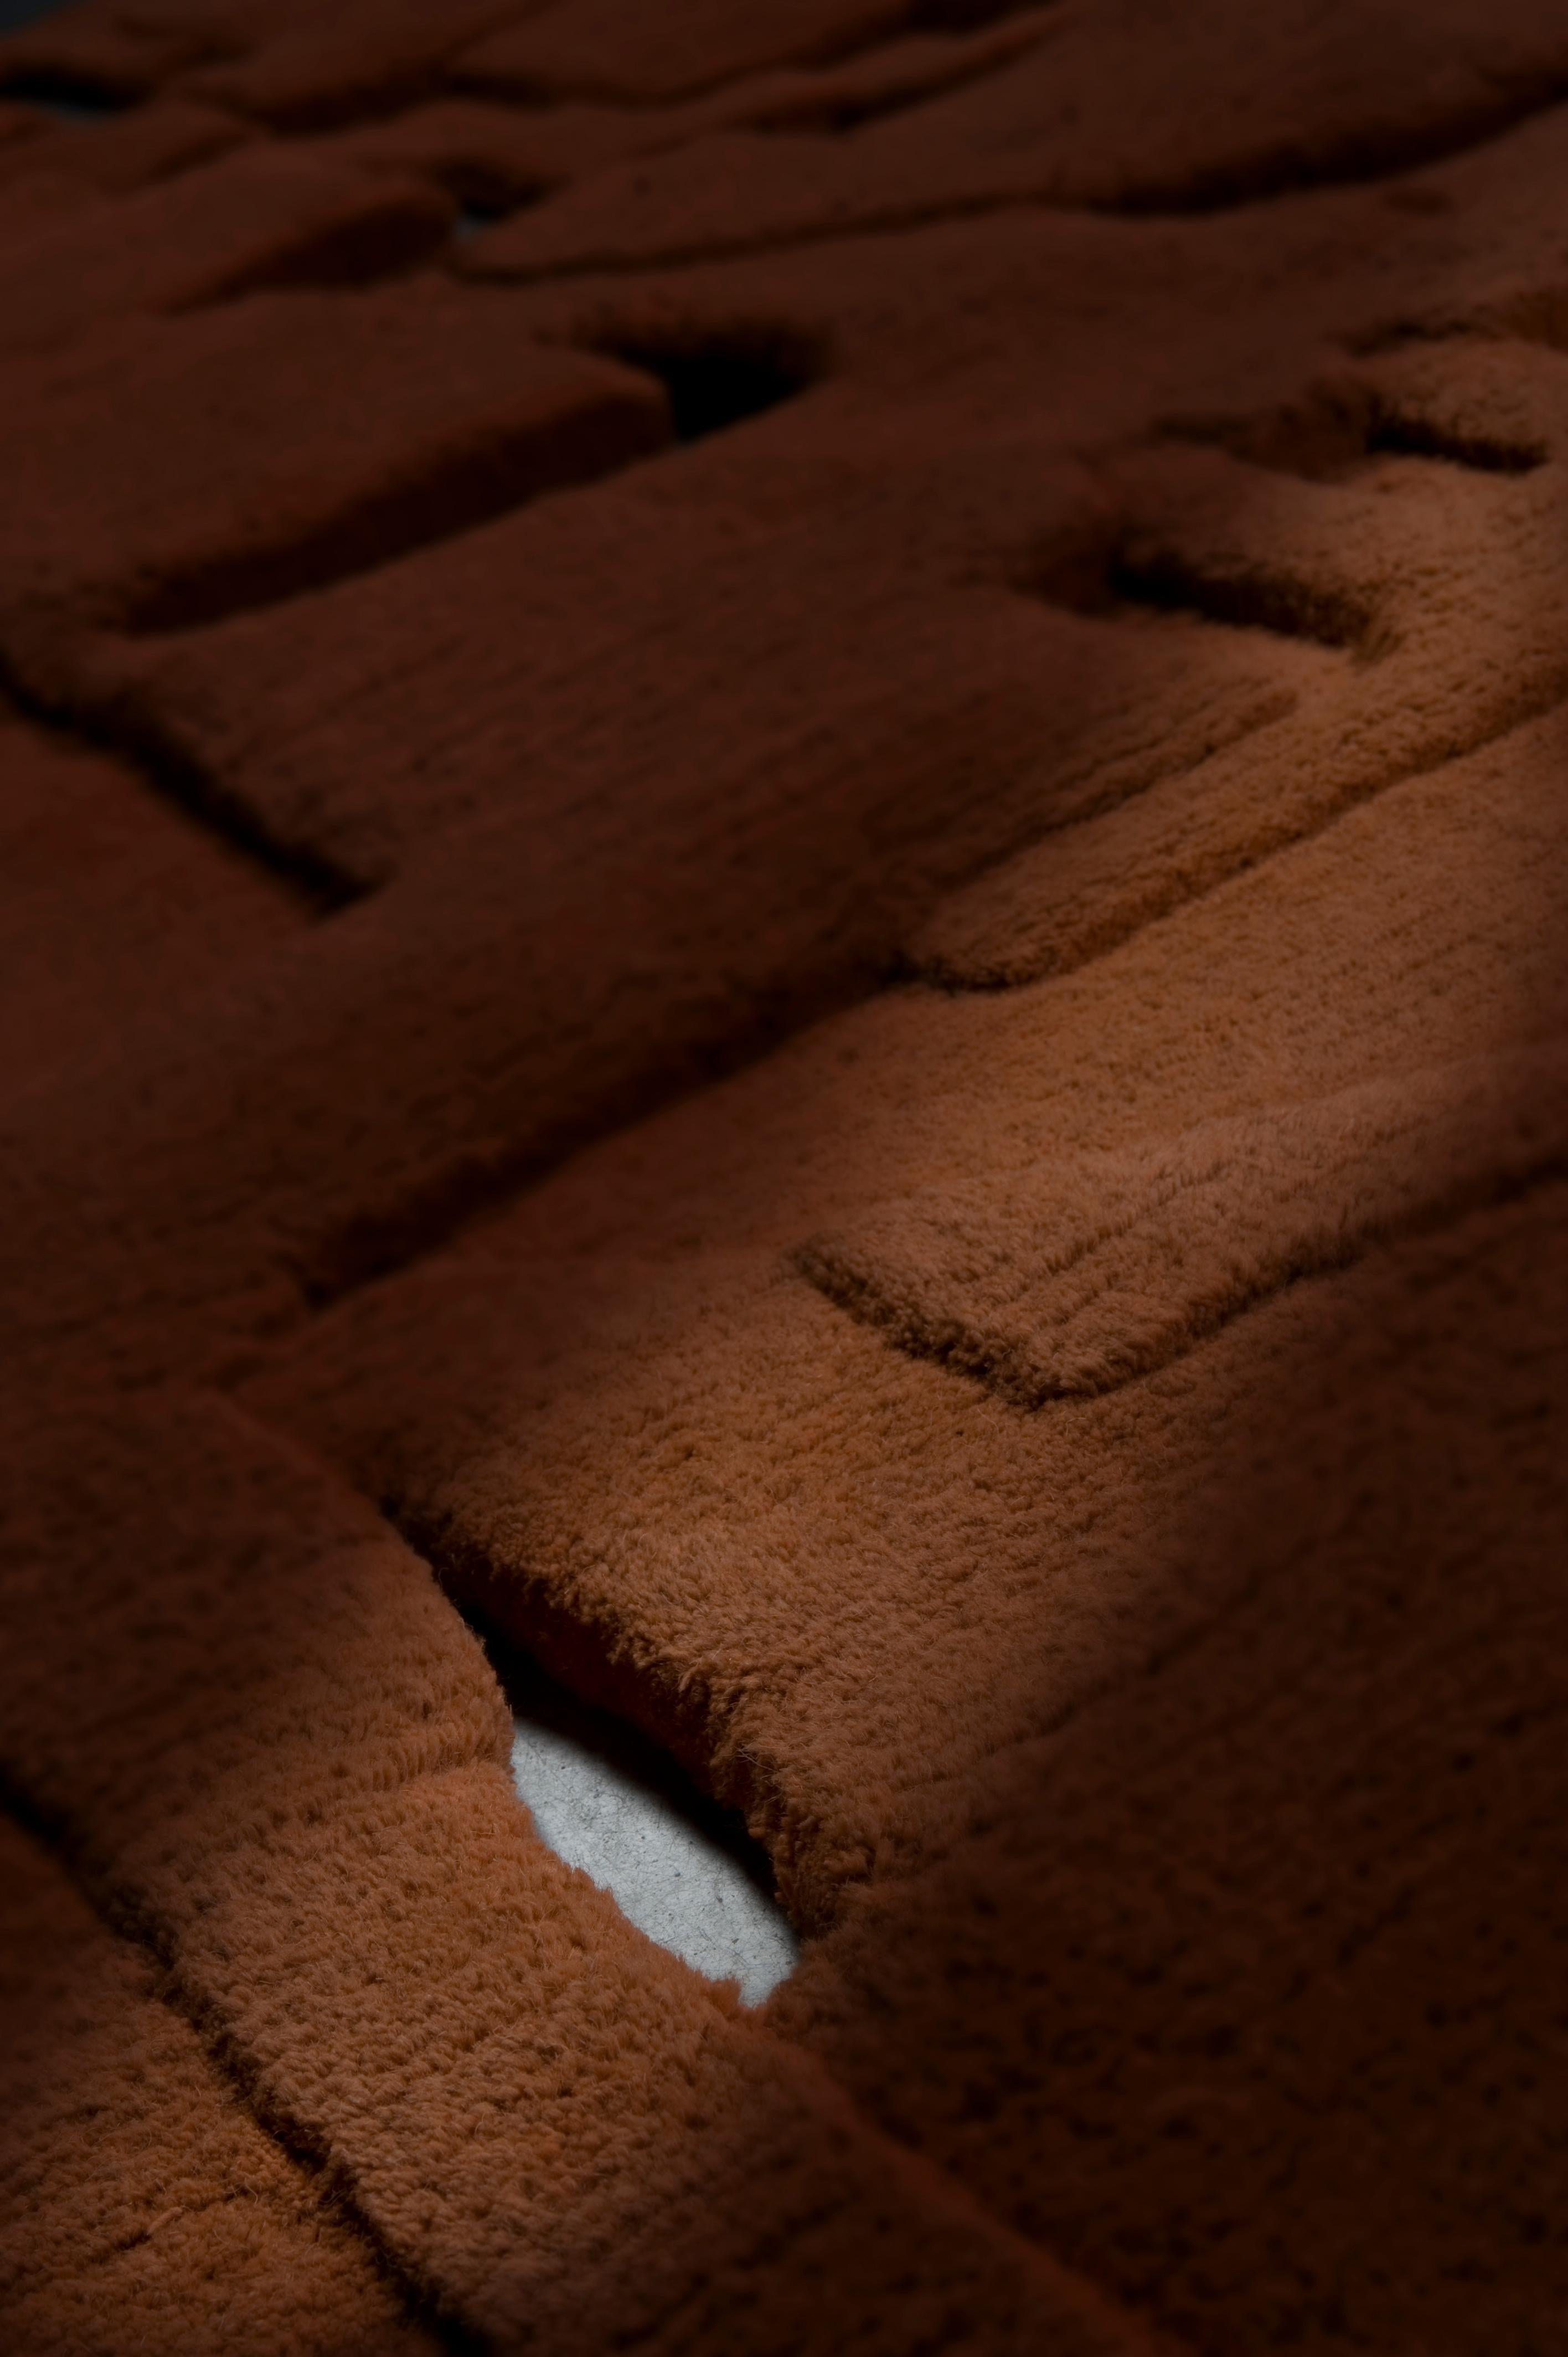 Sao Paulo wurde von Estudio Campana entworfen und ist ein handgeknüpfter Teppich mit 100 Knoten pro Quadratzoll.
Die Größe beträgt 289 x 300 cm. Die Stapelhöhe beträgt 3-4 cm.
Der Teppich wird in Nepal hergestellt. Das Material ist Wolle.
Dieser